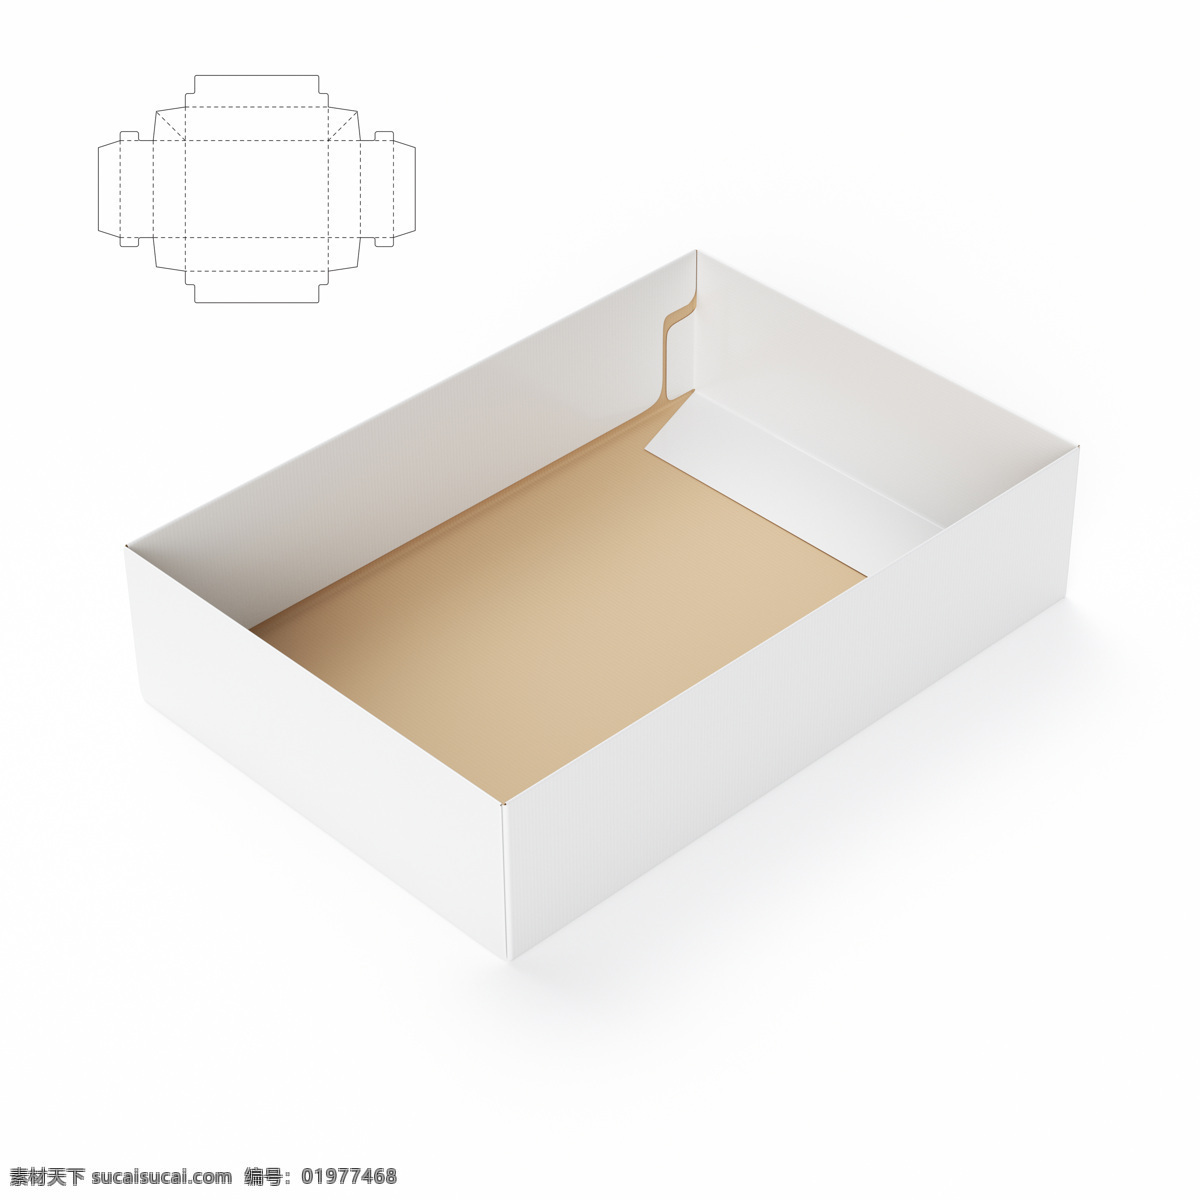 纸盒 效果图 纸盒设计 包装盒设计 包装盒展开图 包装平面图 钢刀线 包装设计 包装效果图 空白包装盒 盒子 产品包装盒 其他类别 生活百科